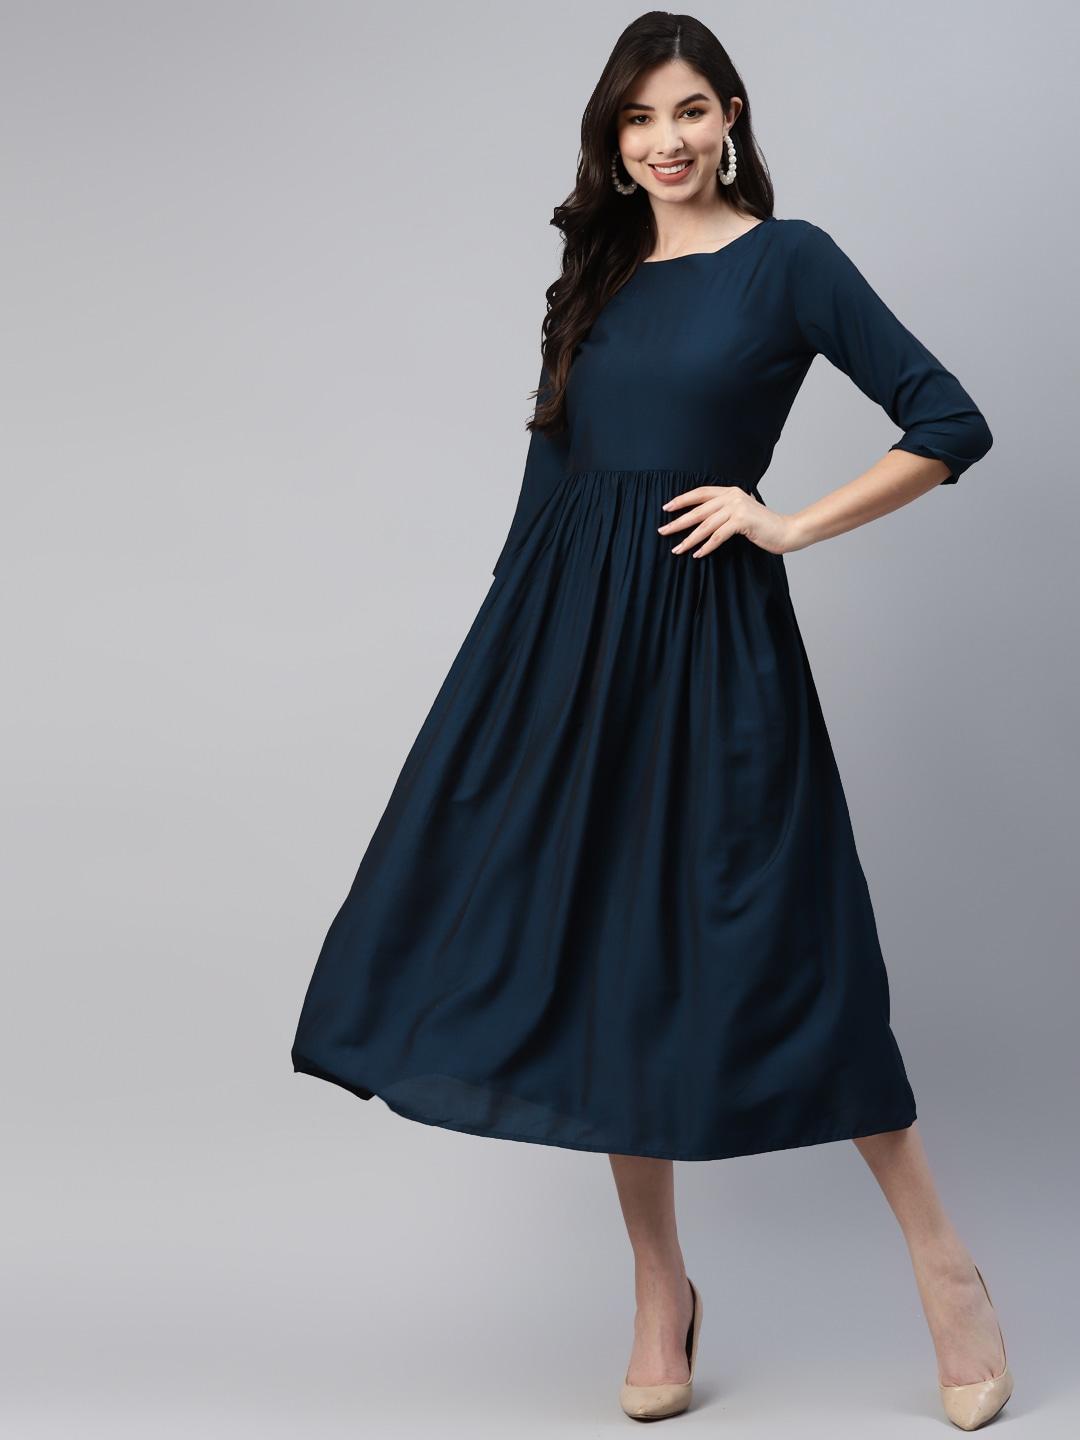 aarika navy blue a-line dress